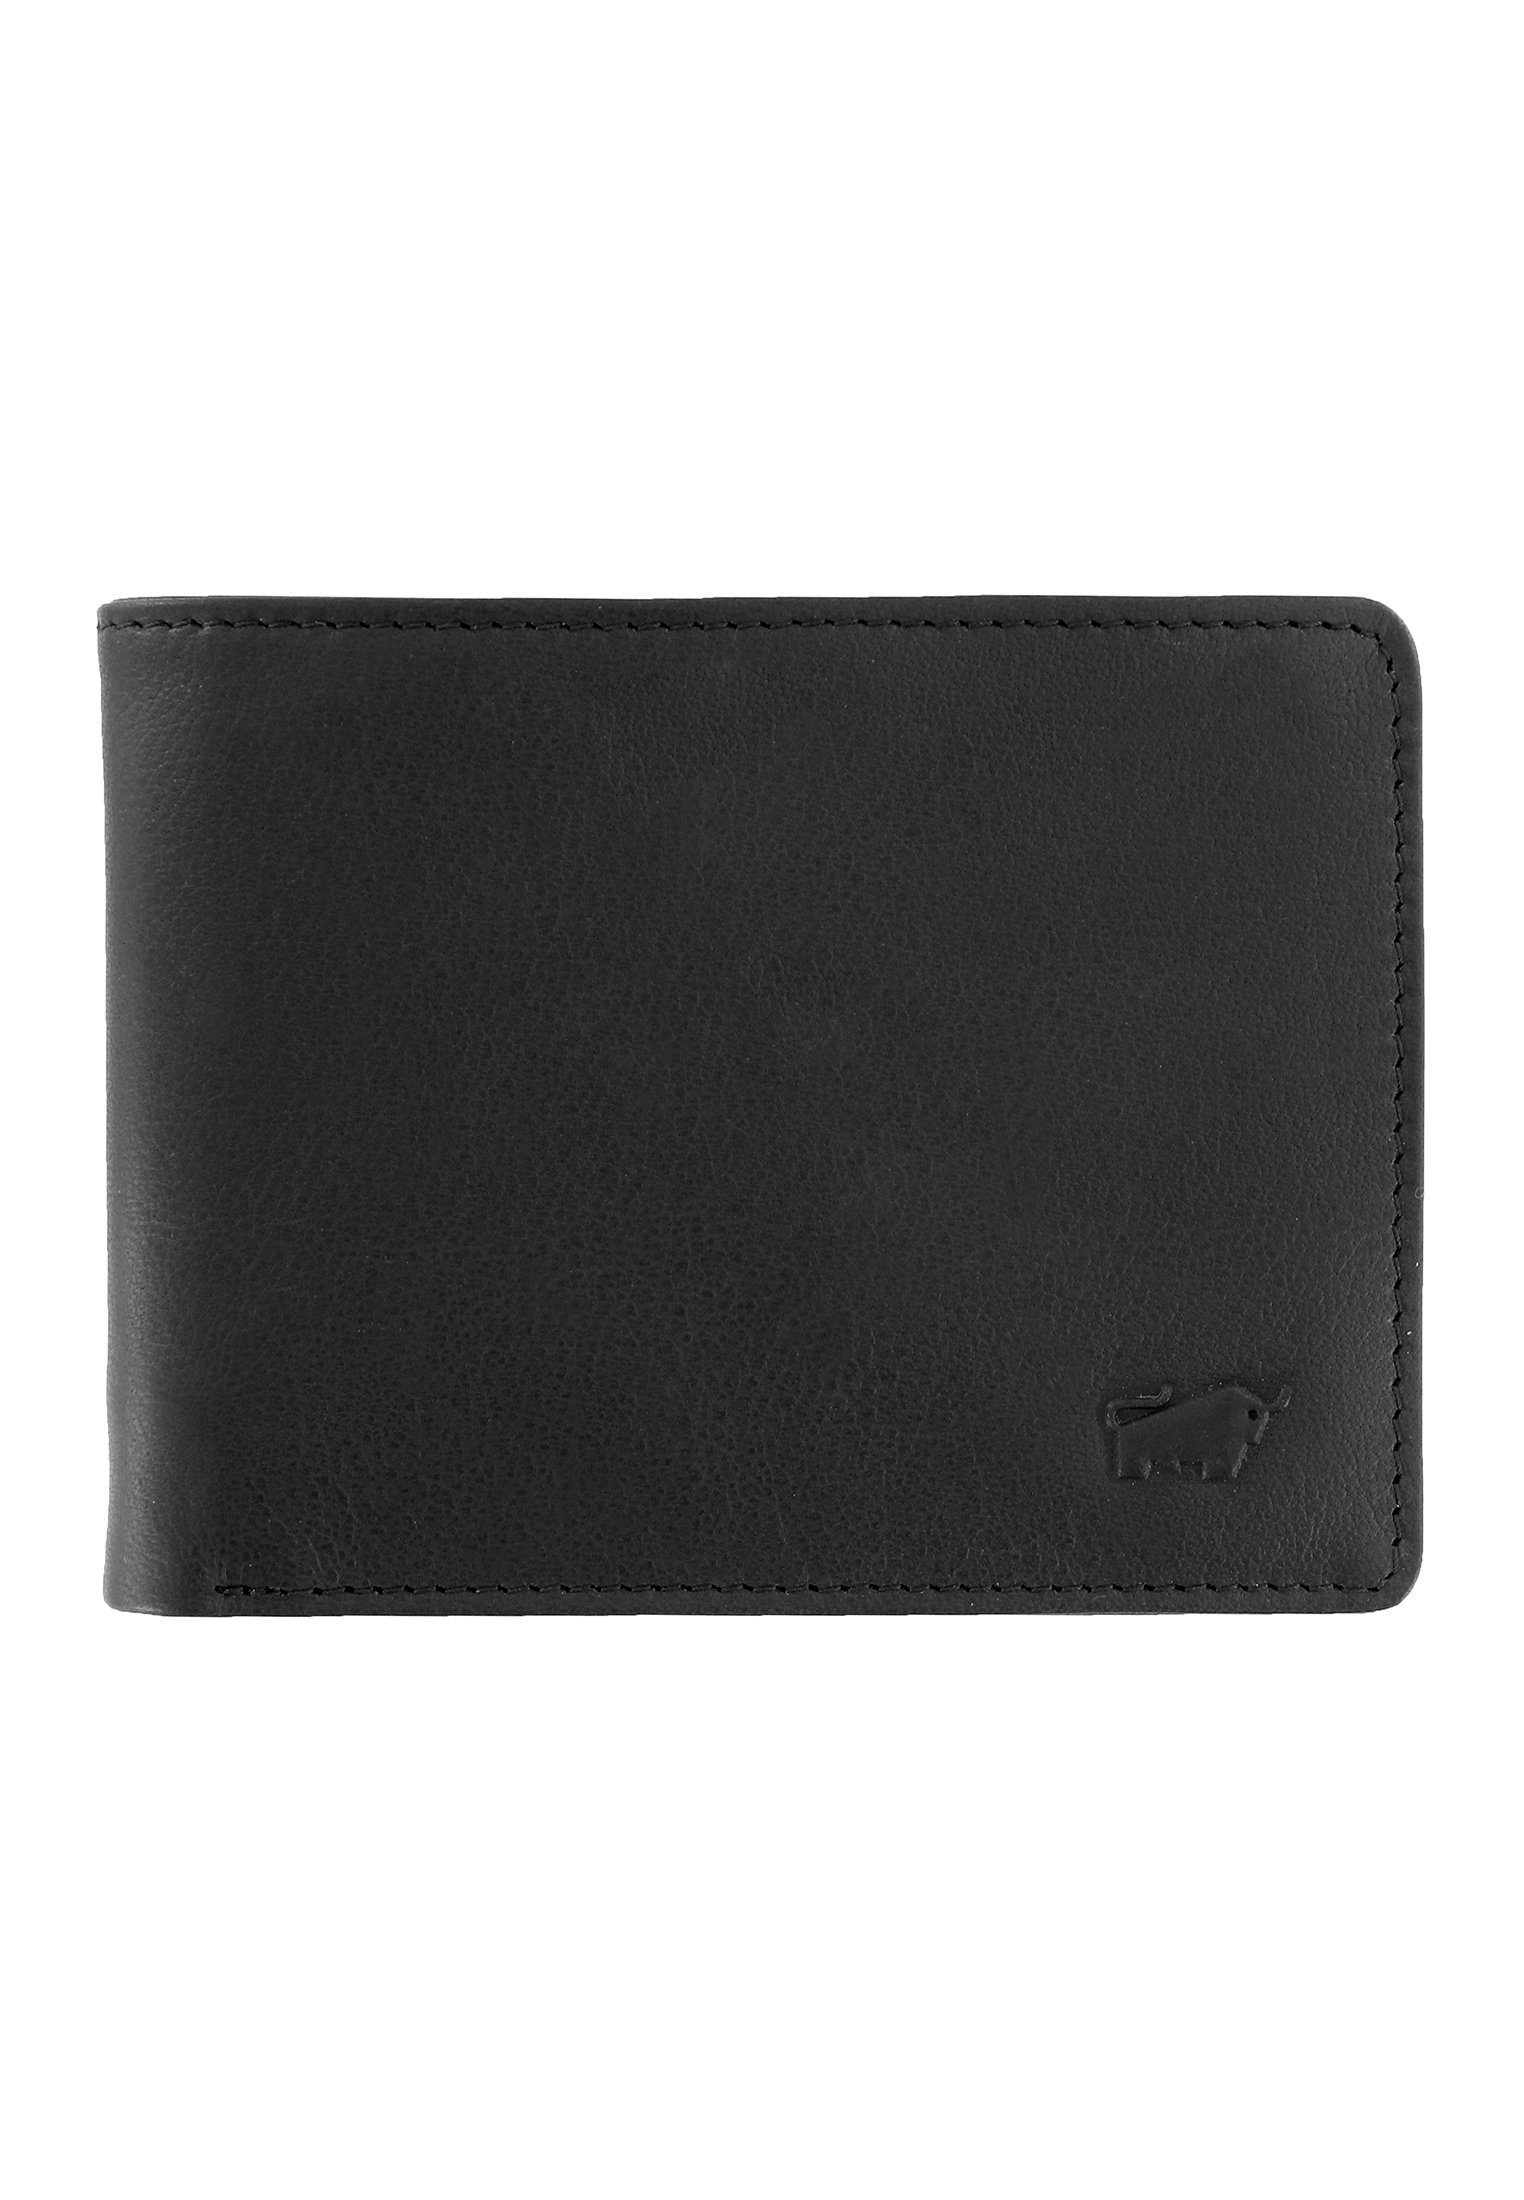 Braun Büffel kompaktem schwarz, 2.0 Geldbörse Geldbörse S 5CS Format ARIZONA in